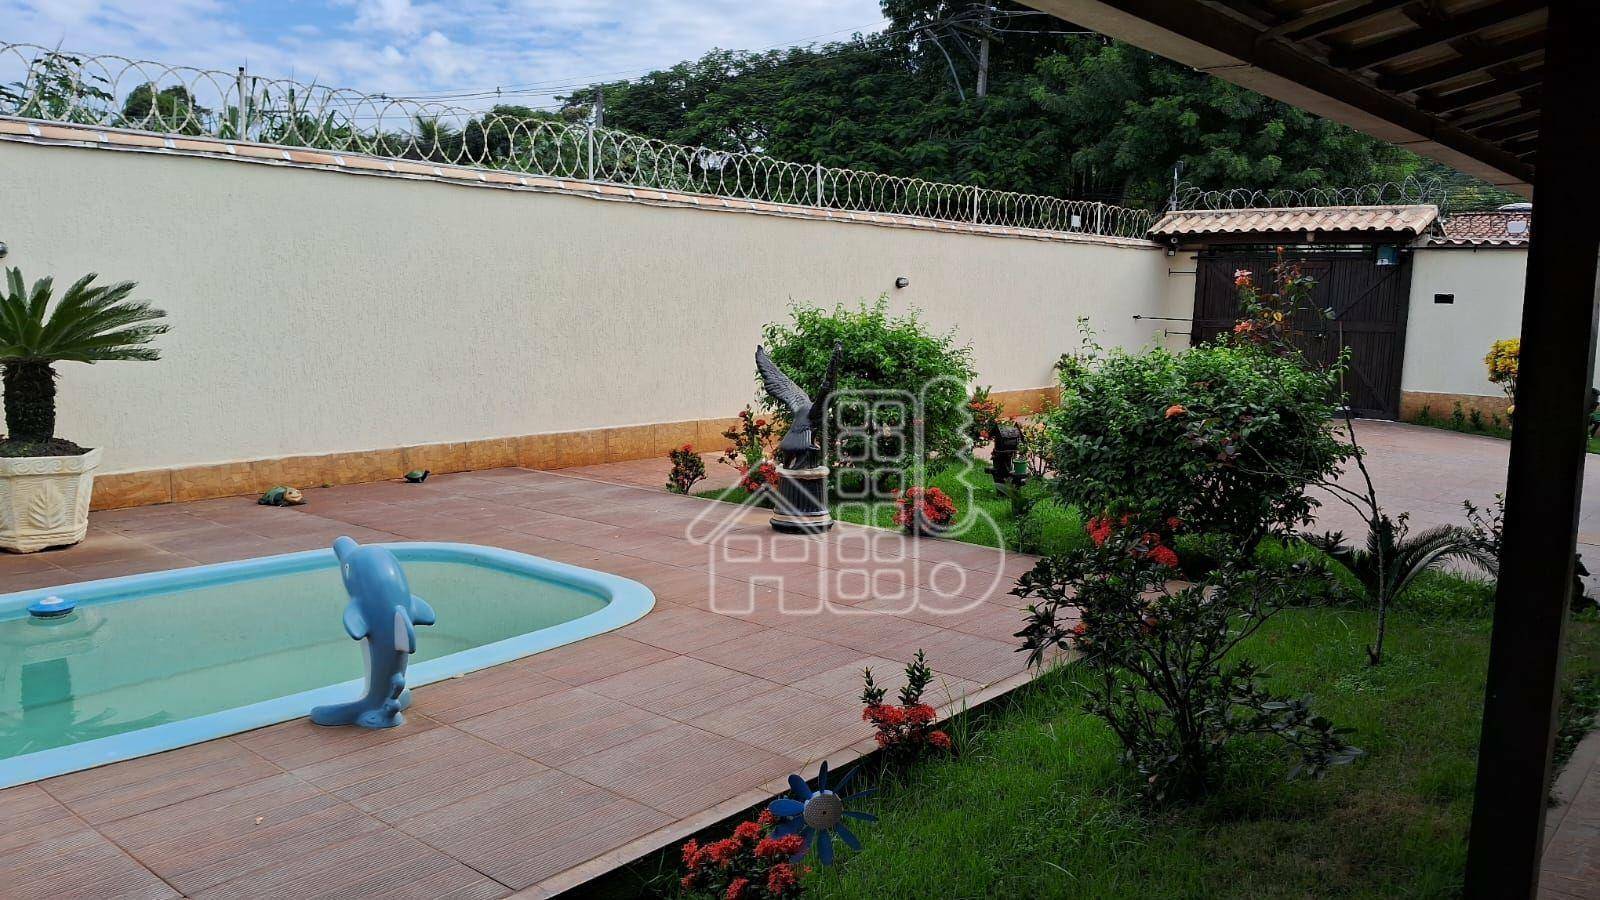 Casa com 2 dormitórios à venda, 110 m² por R$ 650.000,99 - Recanto de Itaipuaçu - Maricá/RJ